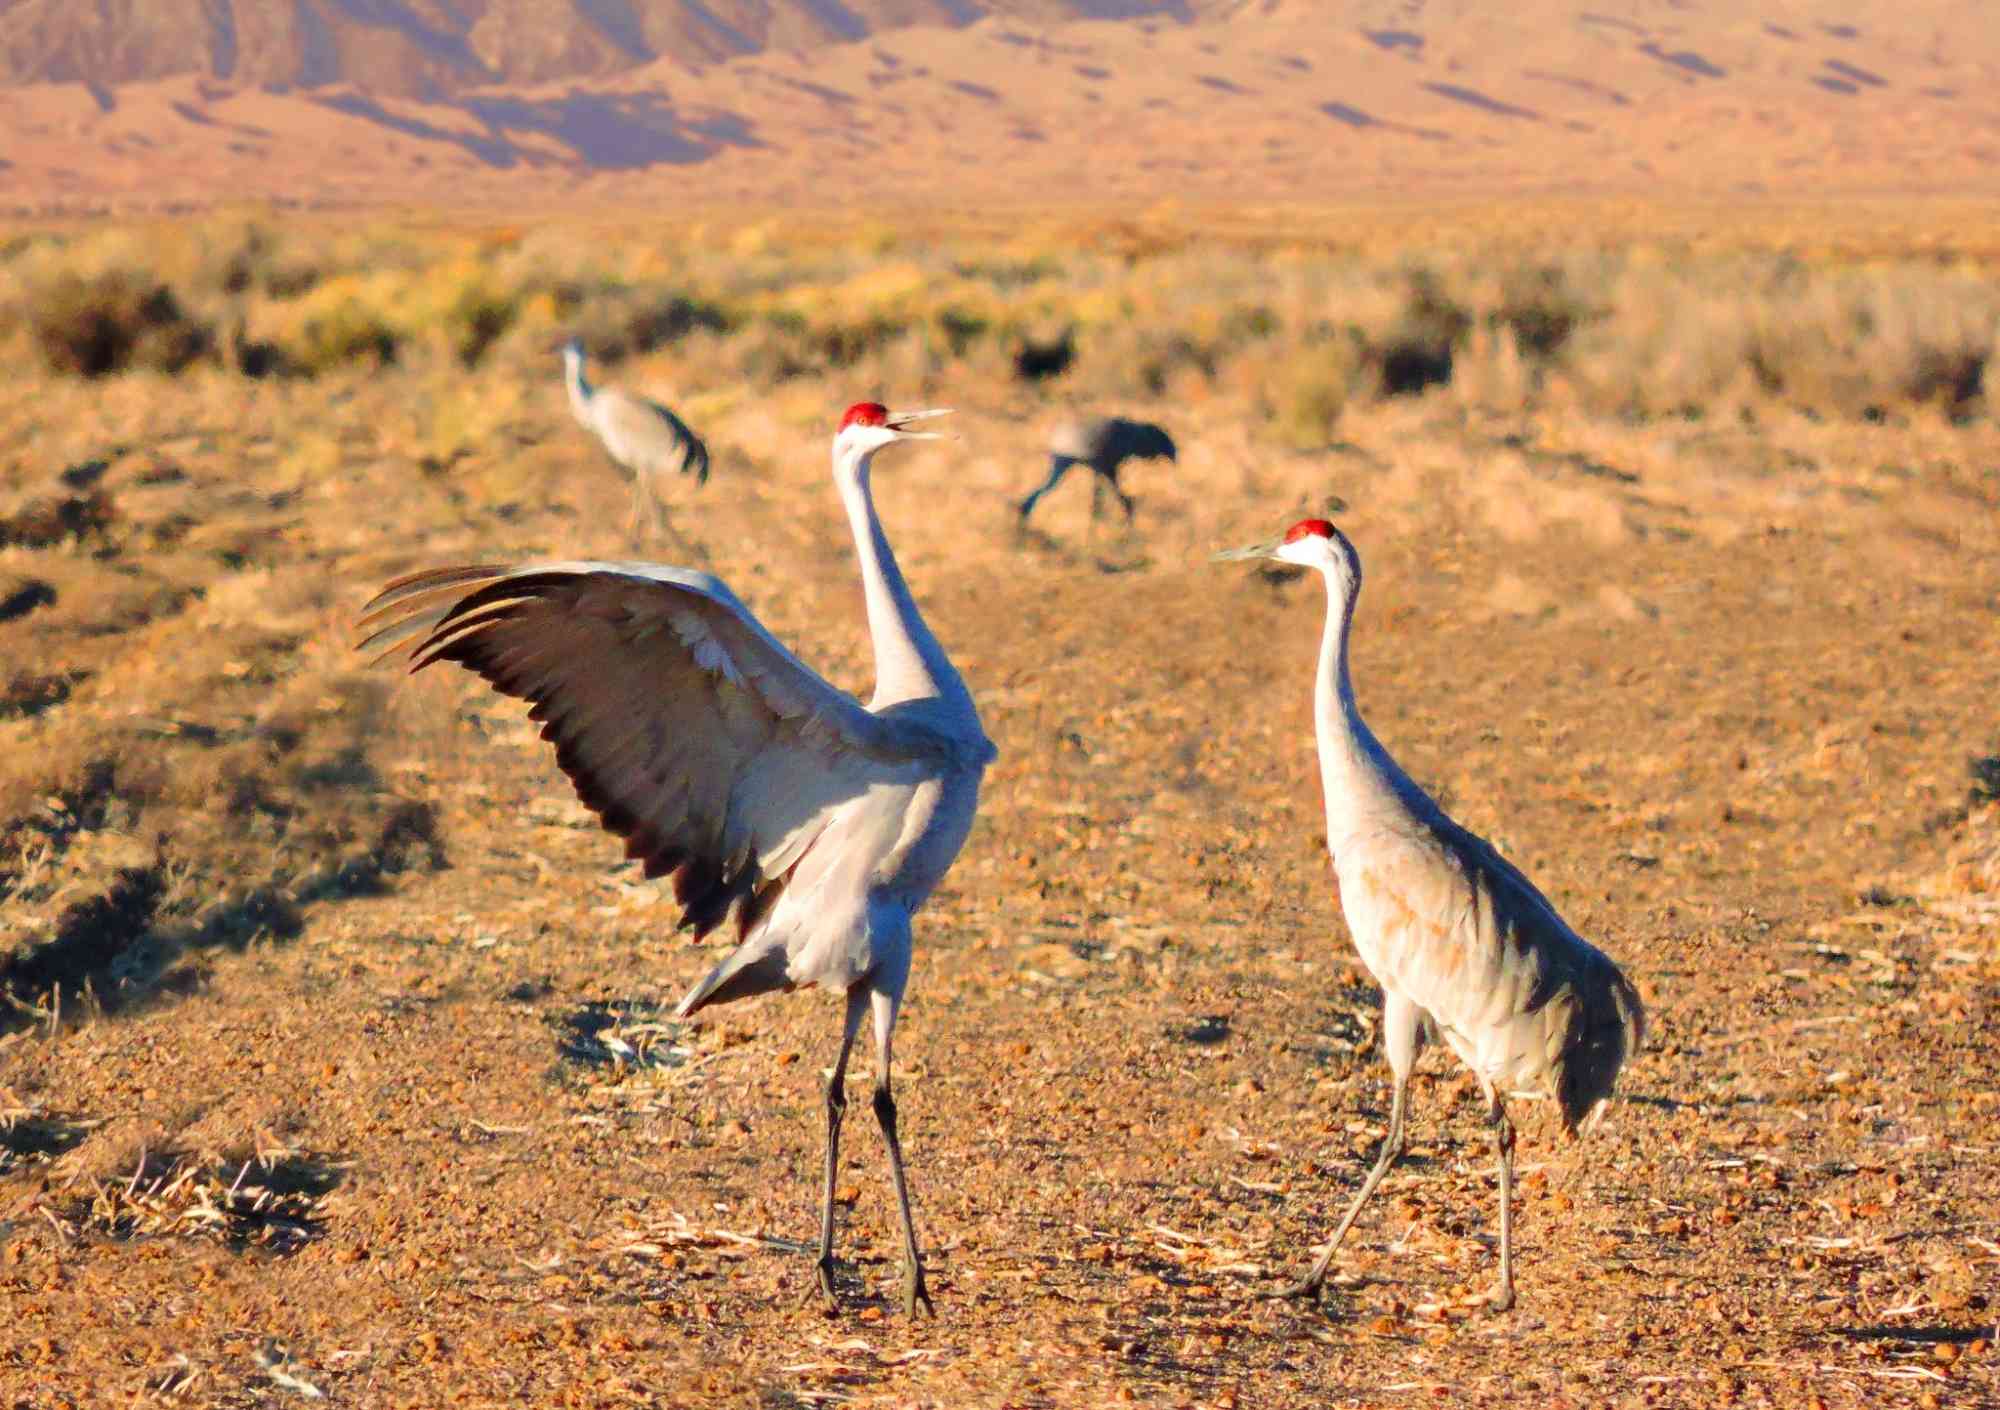 Pair of sandhill cranes dancing